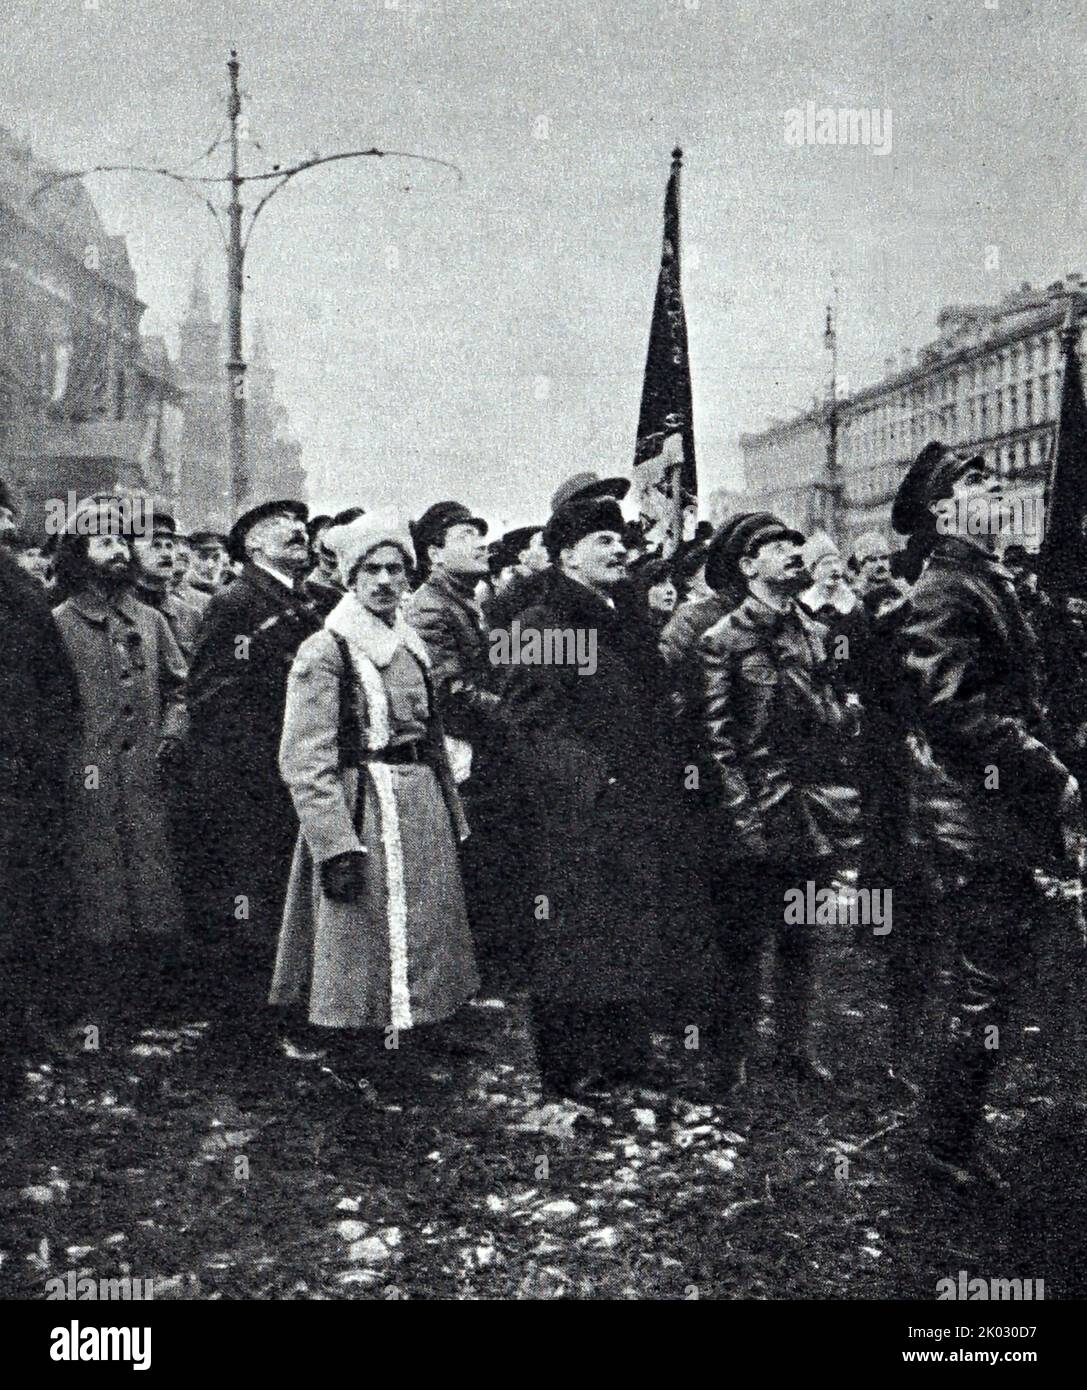 Lenin V. I. , Sverdlov Ya. M. visiting the temporary monument to K. Marx and F. Engels on Voskresenskaya Square (now Revolution Square). 1918, November 7, Moscow. Savelyev A. I. Stock Photo